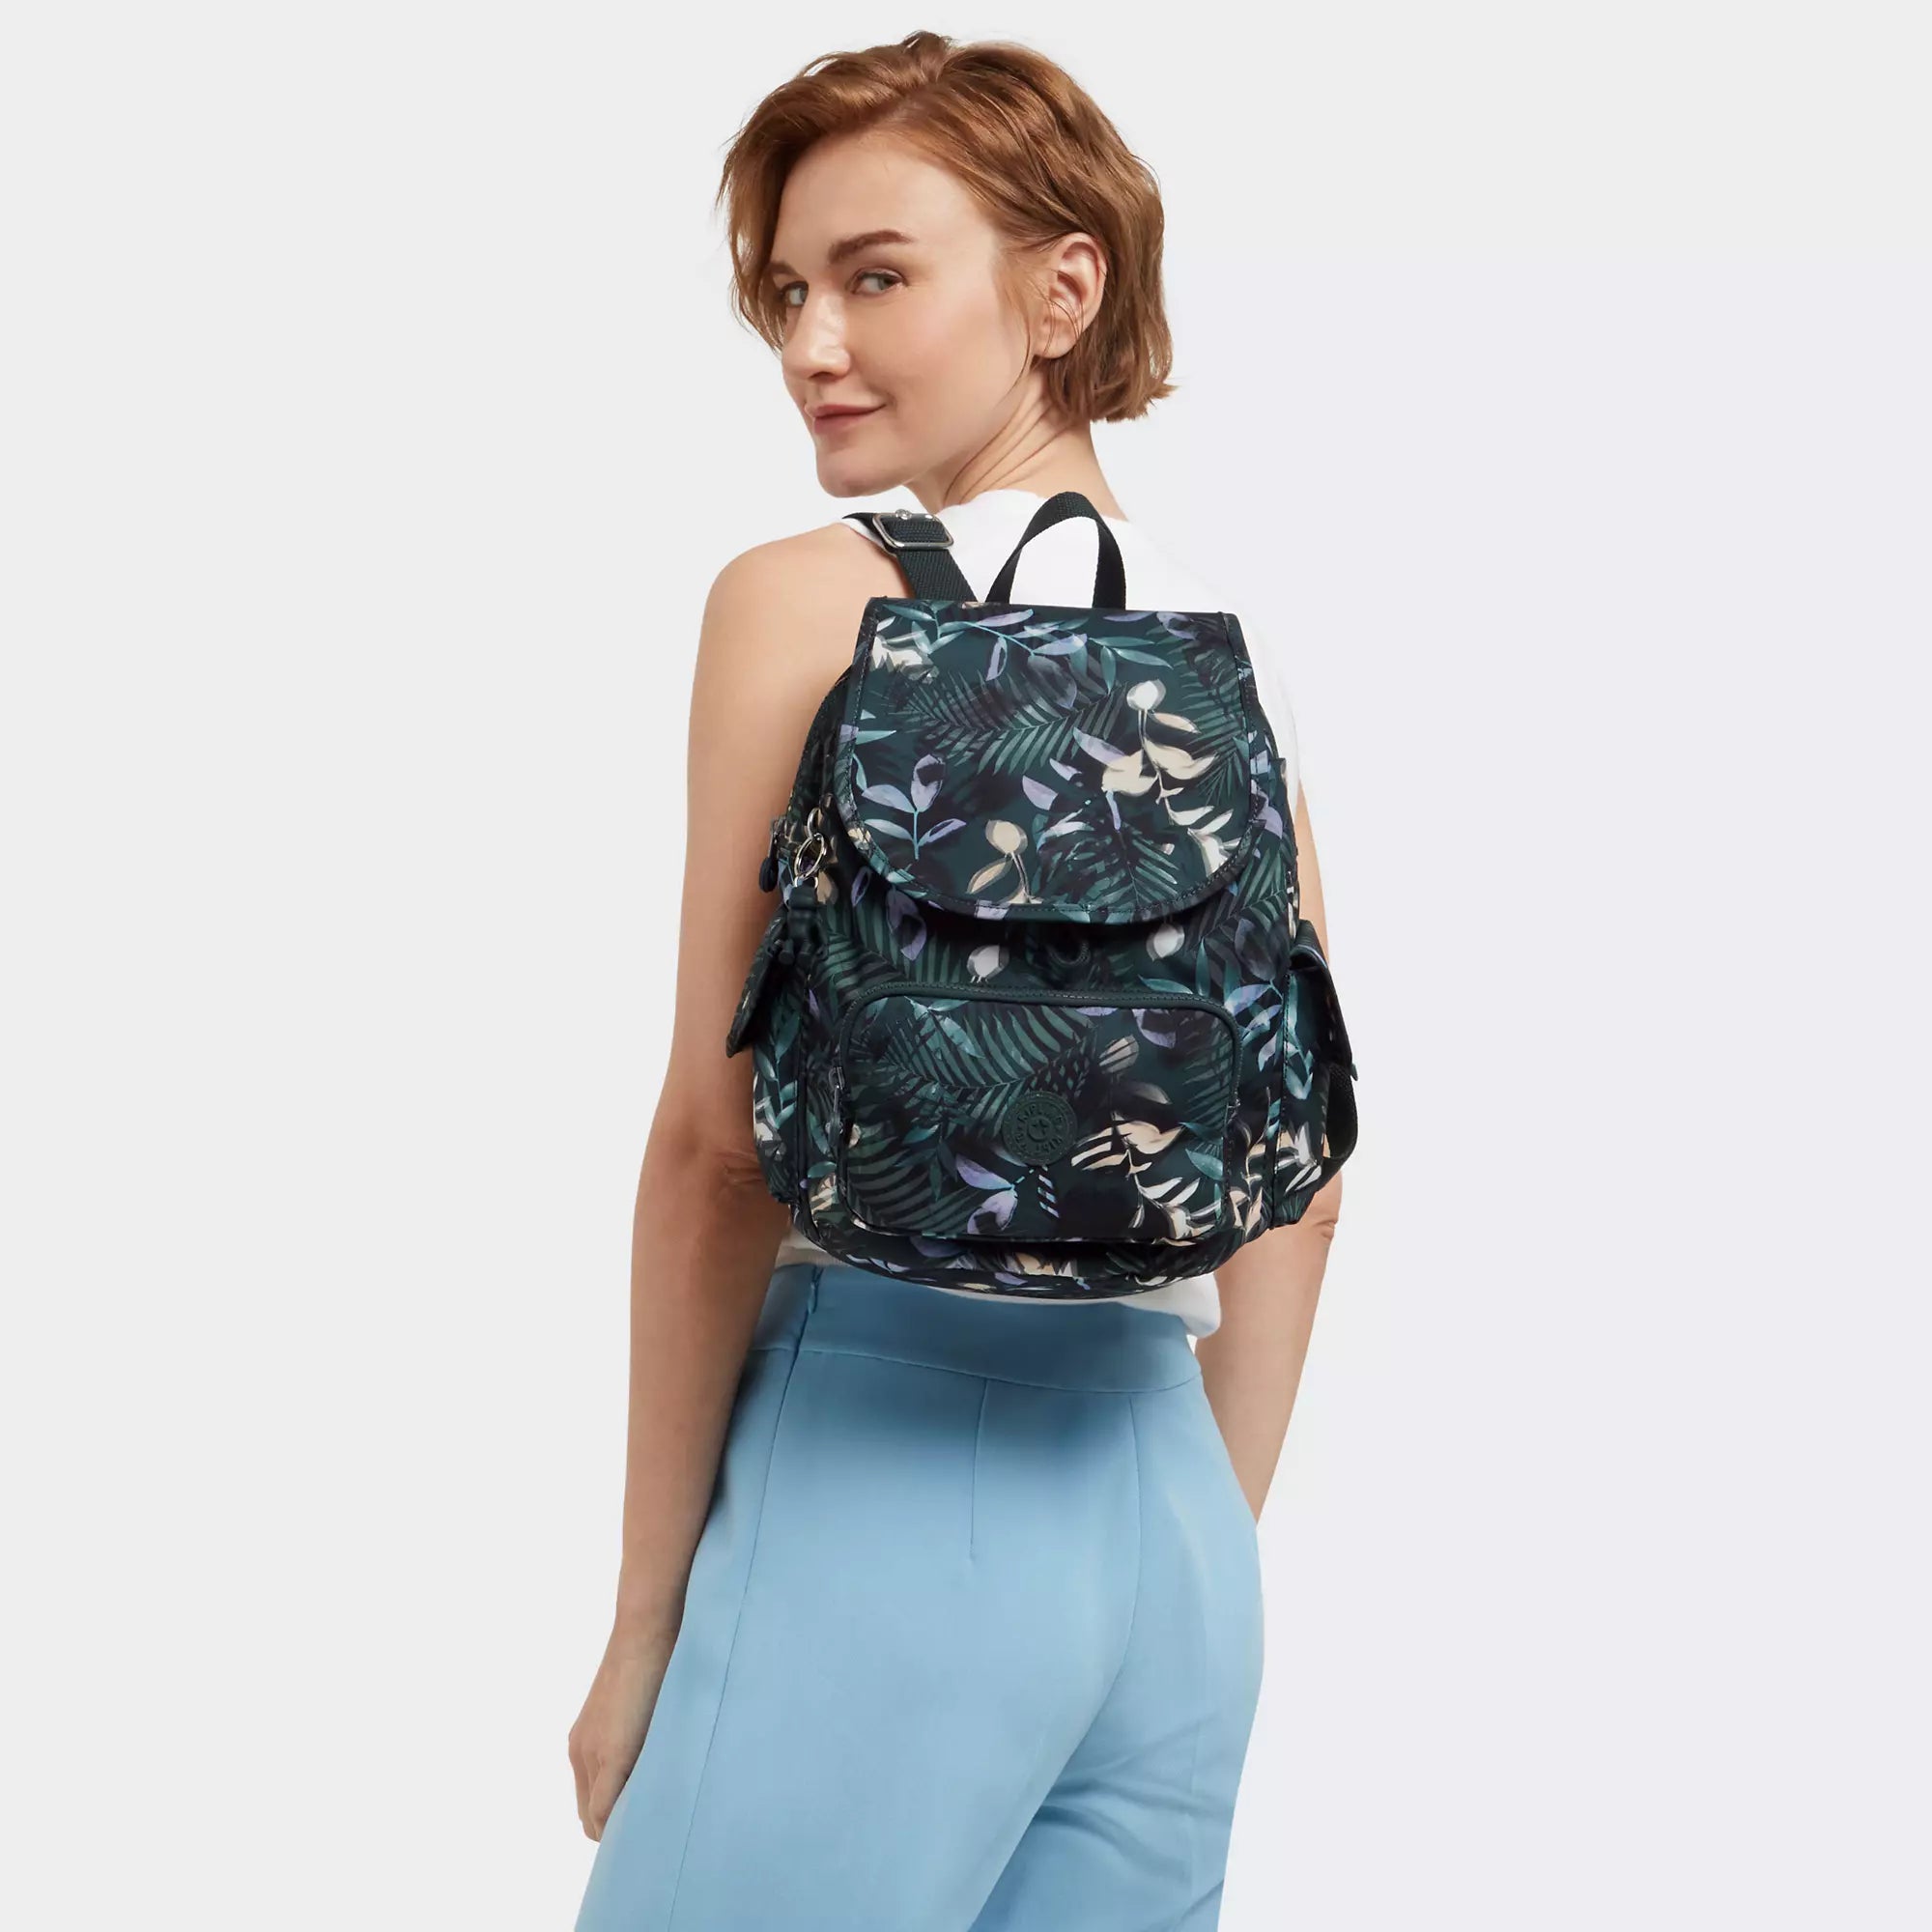 Kipling City Pack Small  Nylon Backpack